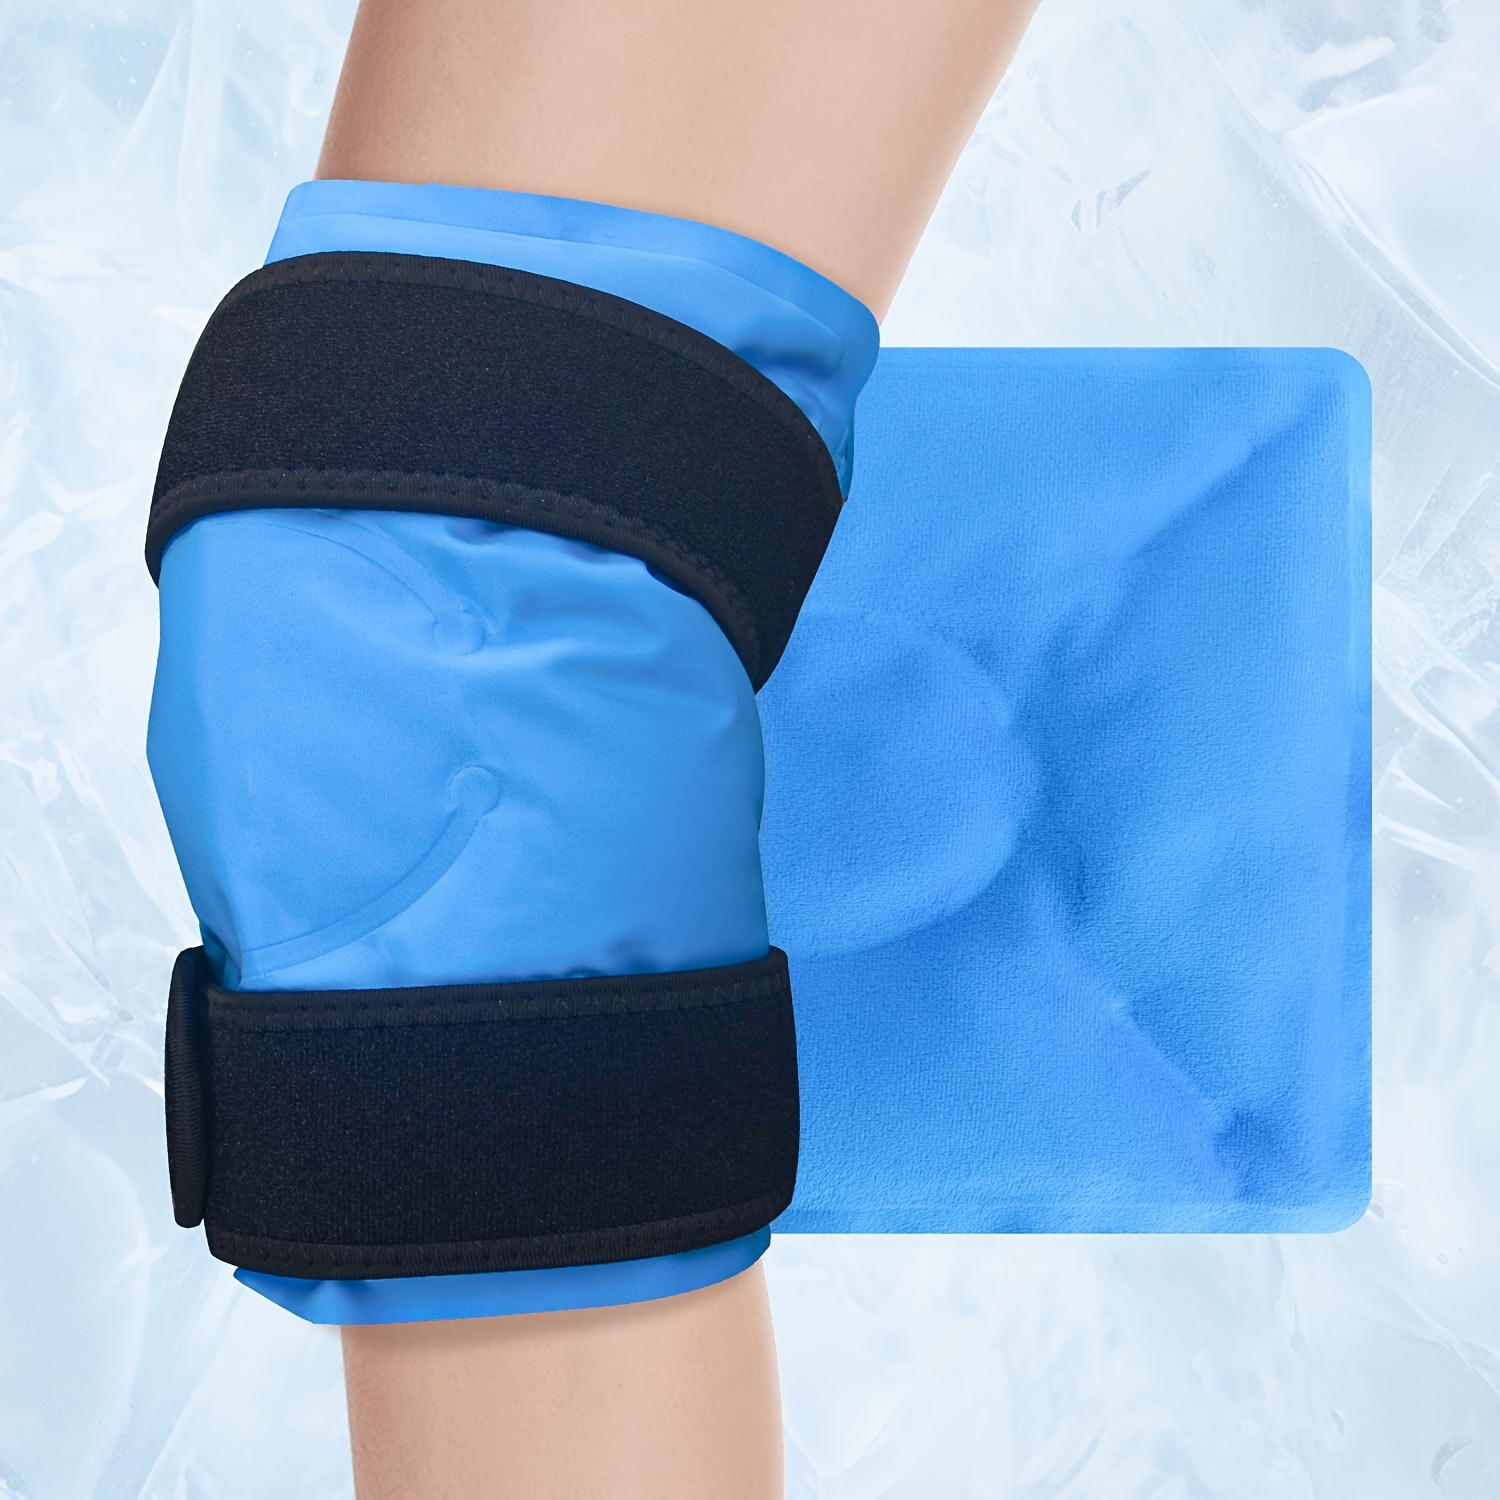  Paquete grande de gel de rodilla para lesiones, bolsa de hielo  reutilizable para cirugía de rodilla, lesiones deportivas, dolores  musculares, envoltura de rodilla de hielo con compresión fría para : Salud